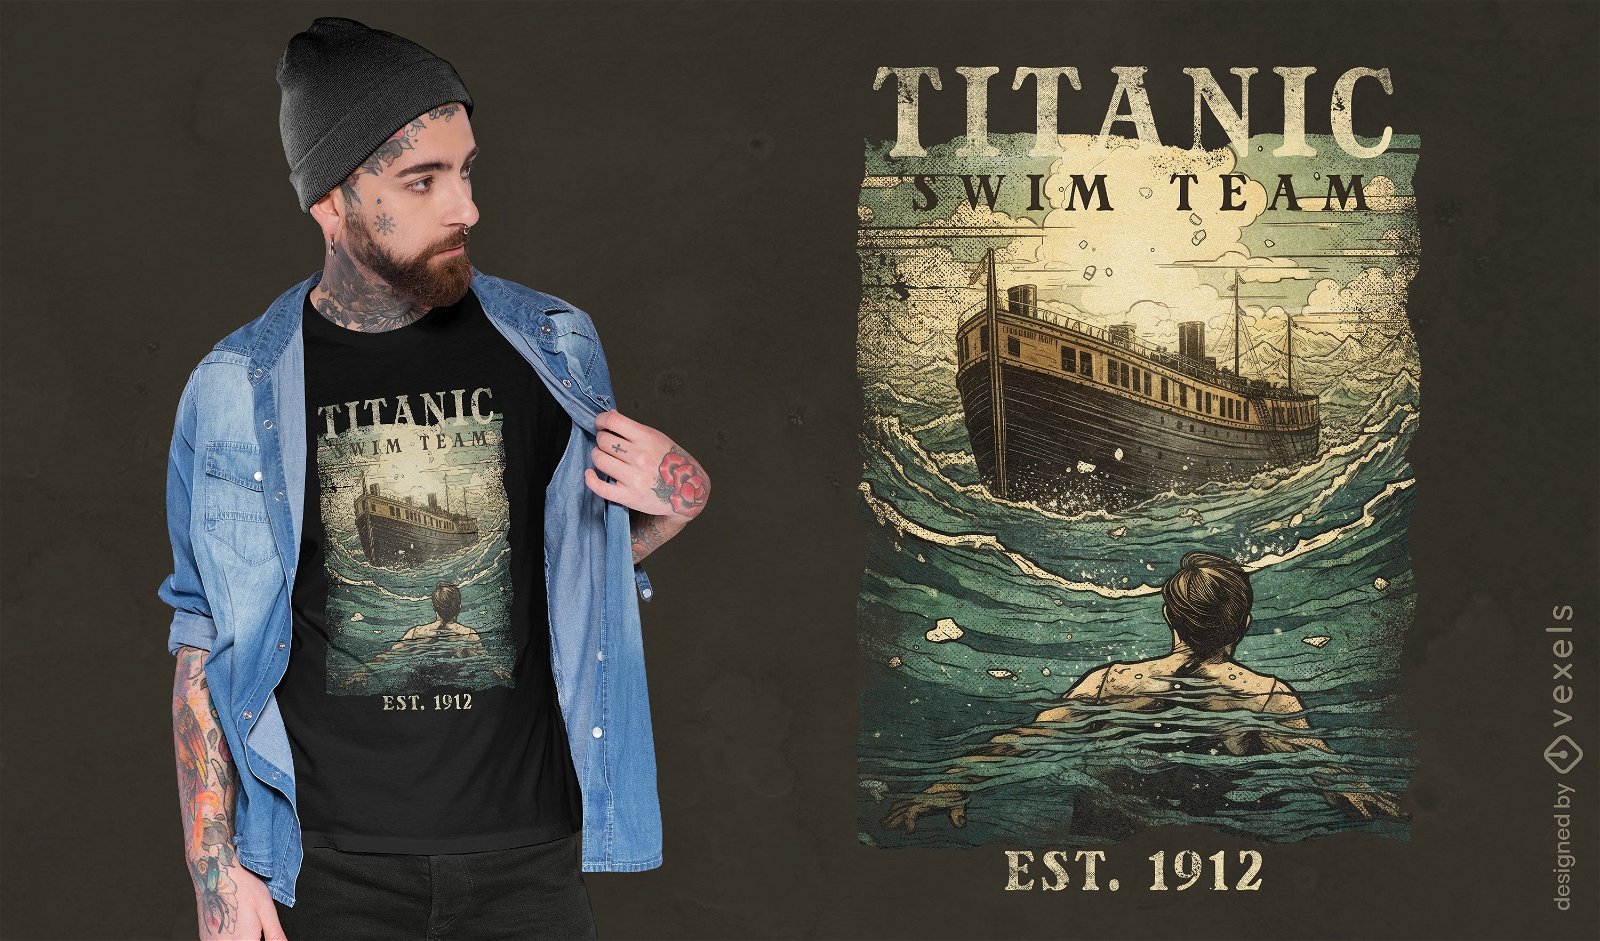 Titanic swim team t-shirt design